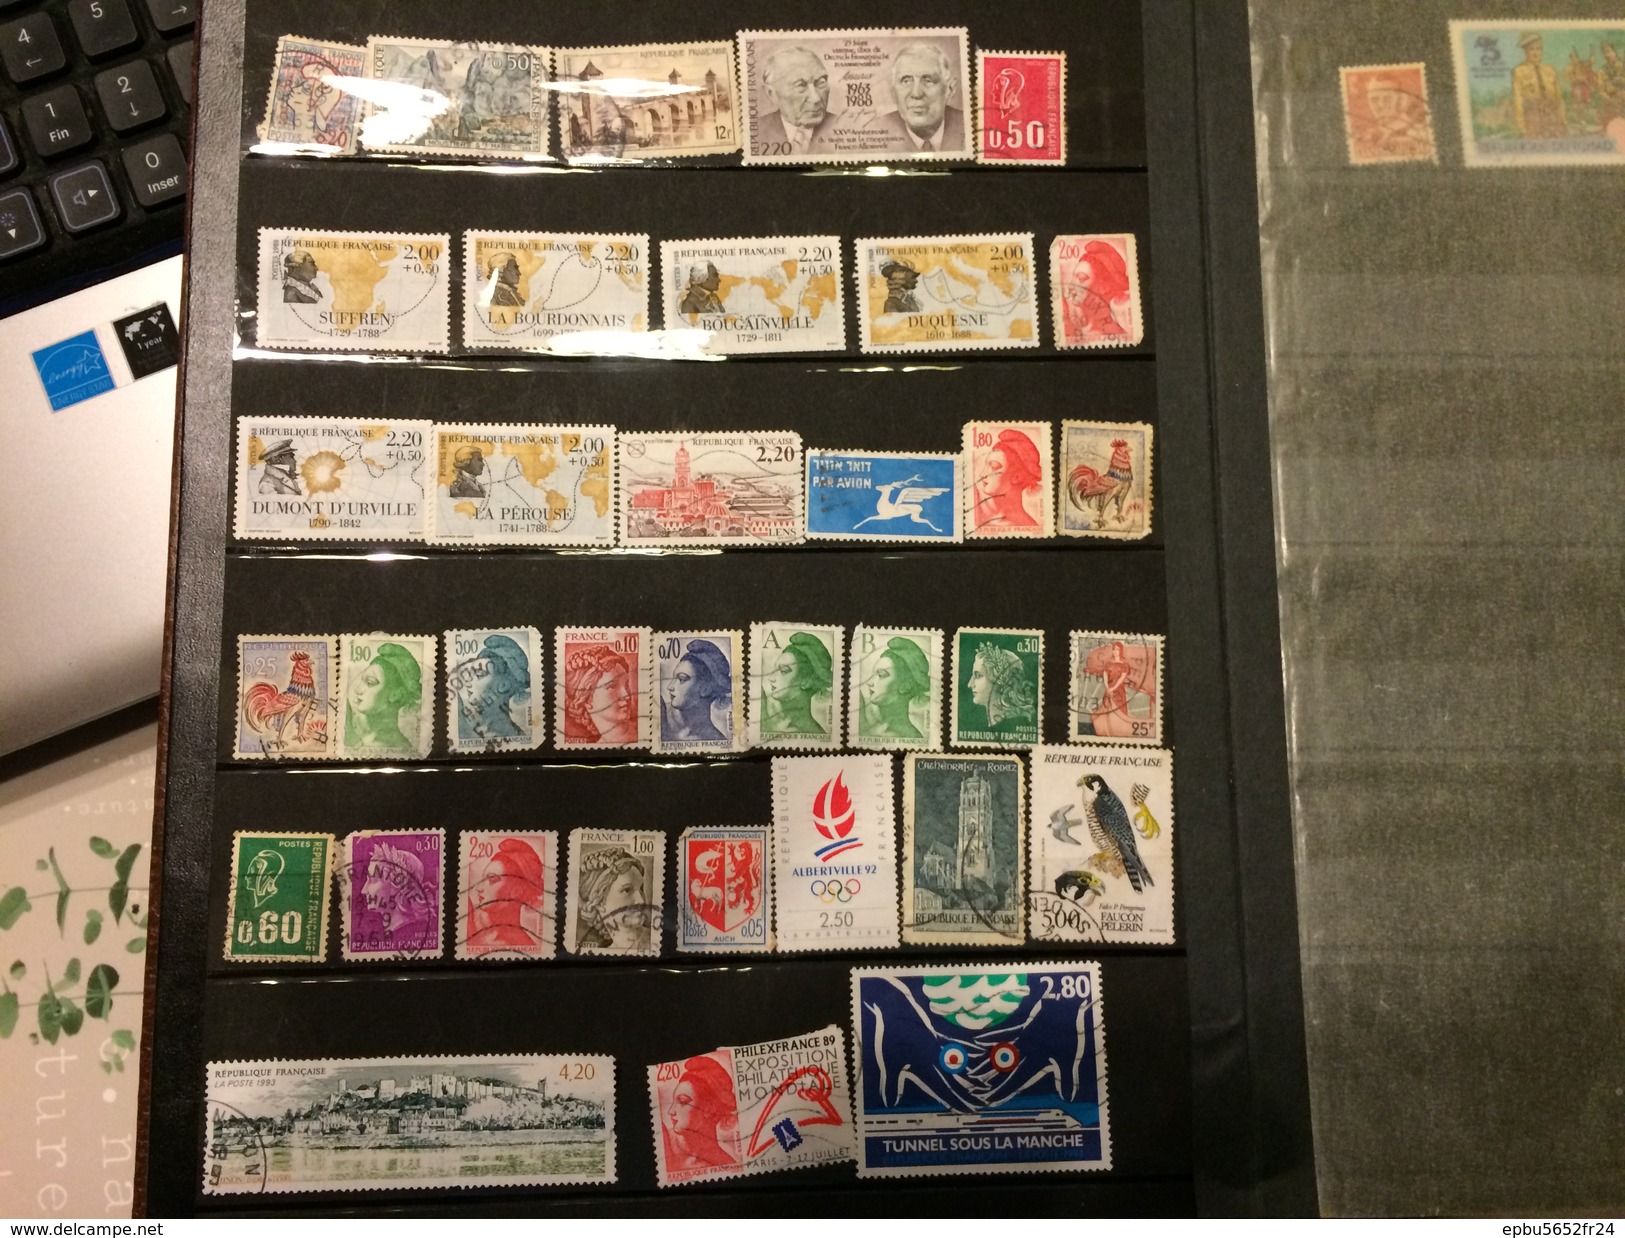 Album de plus de 700 timbres pour la grande majorité etrangers  obliteres ou neufs